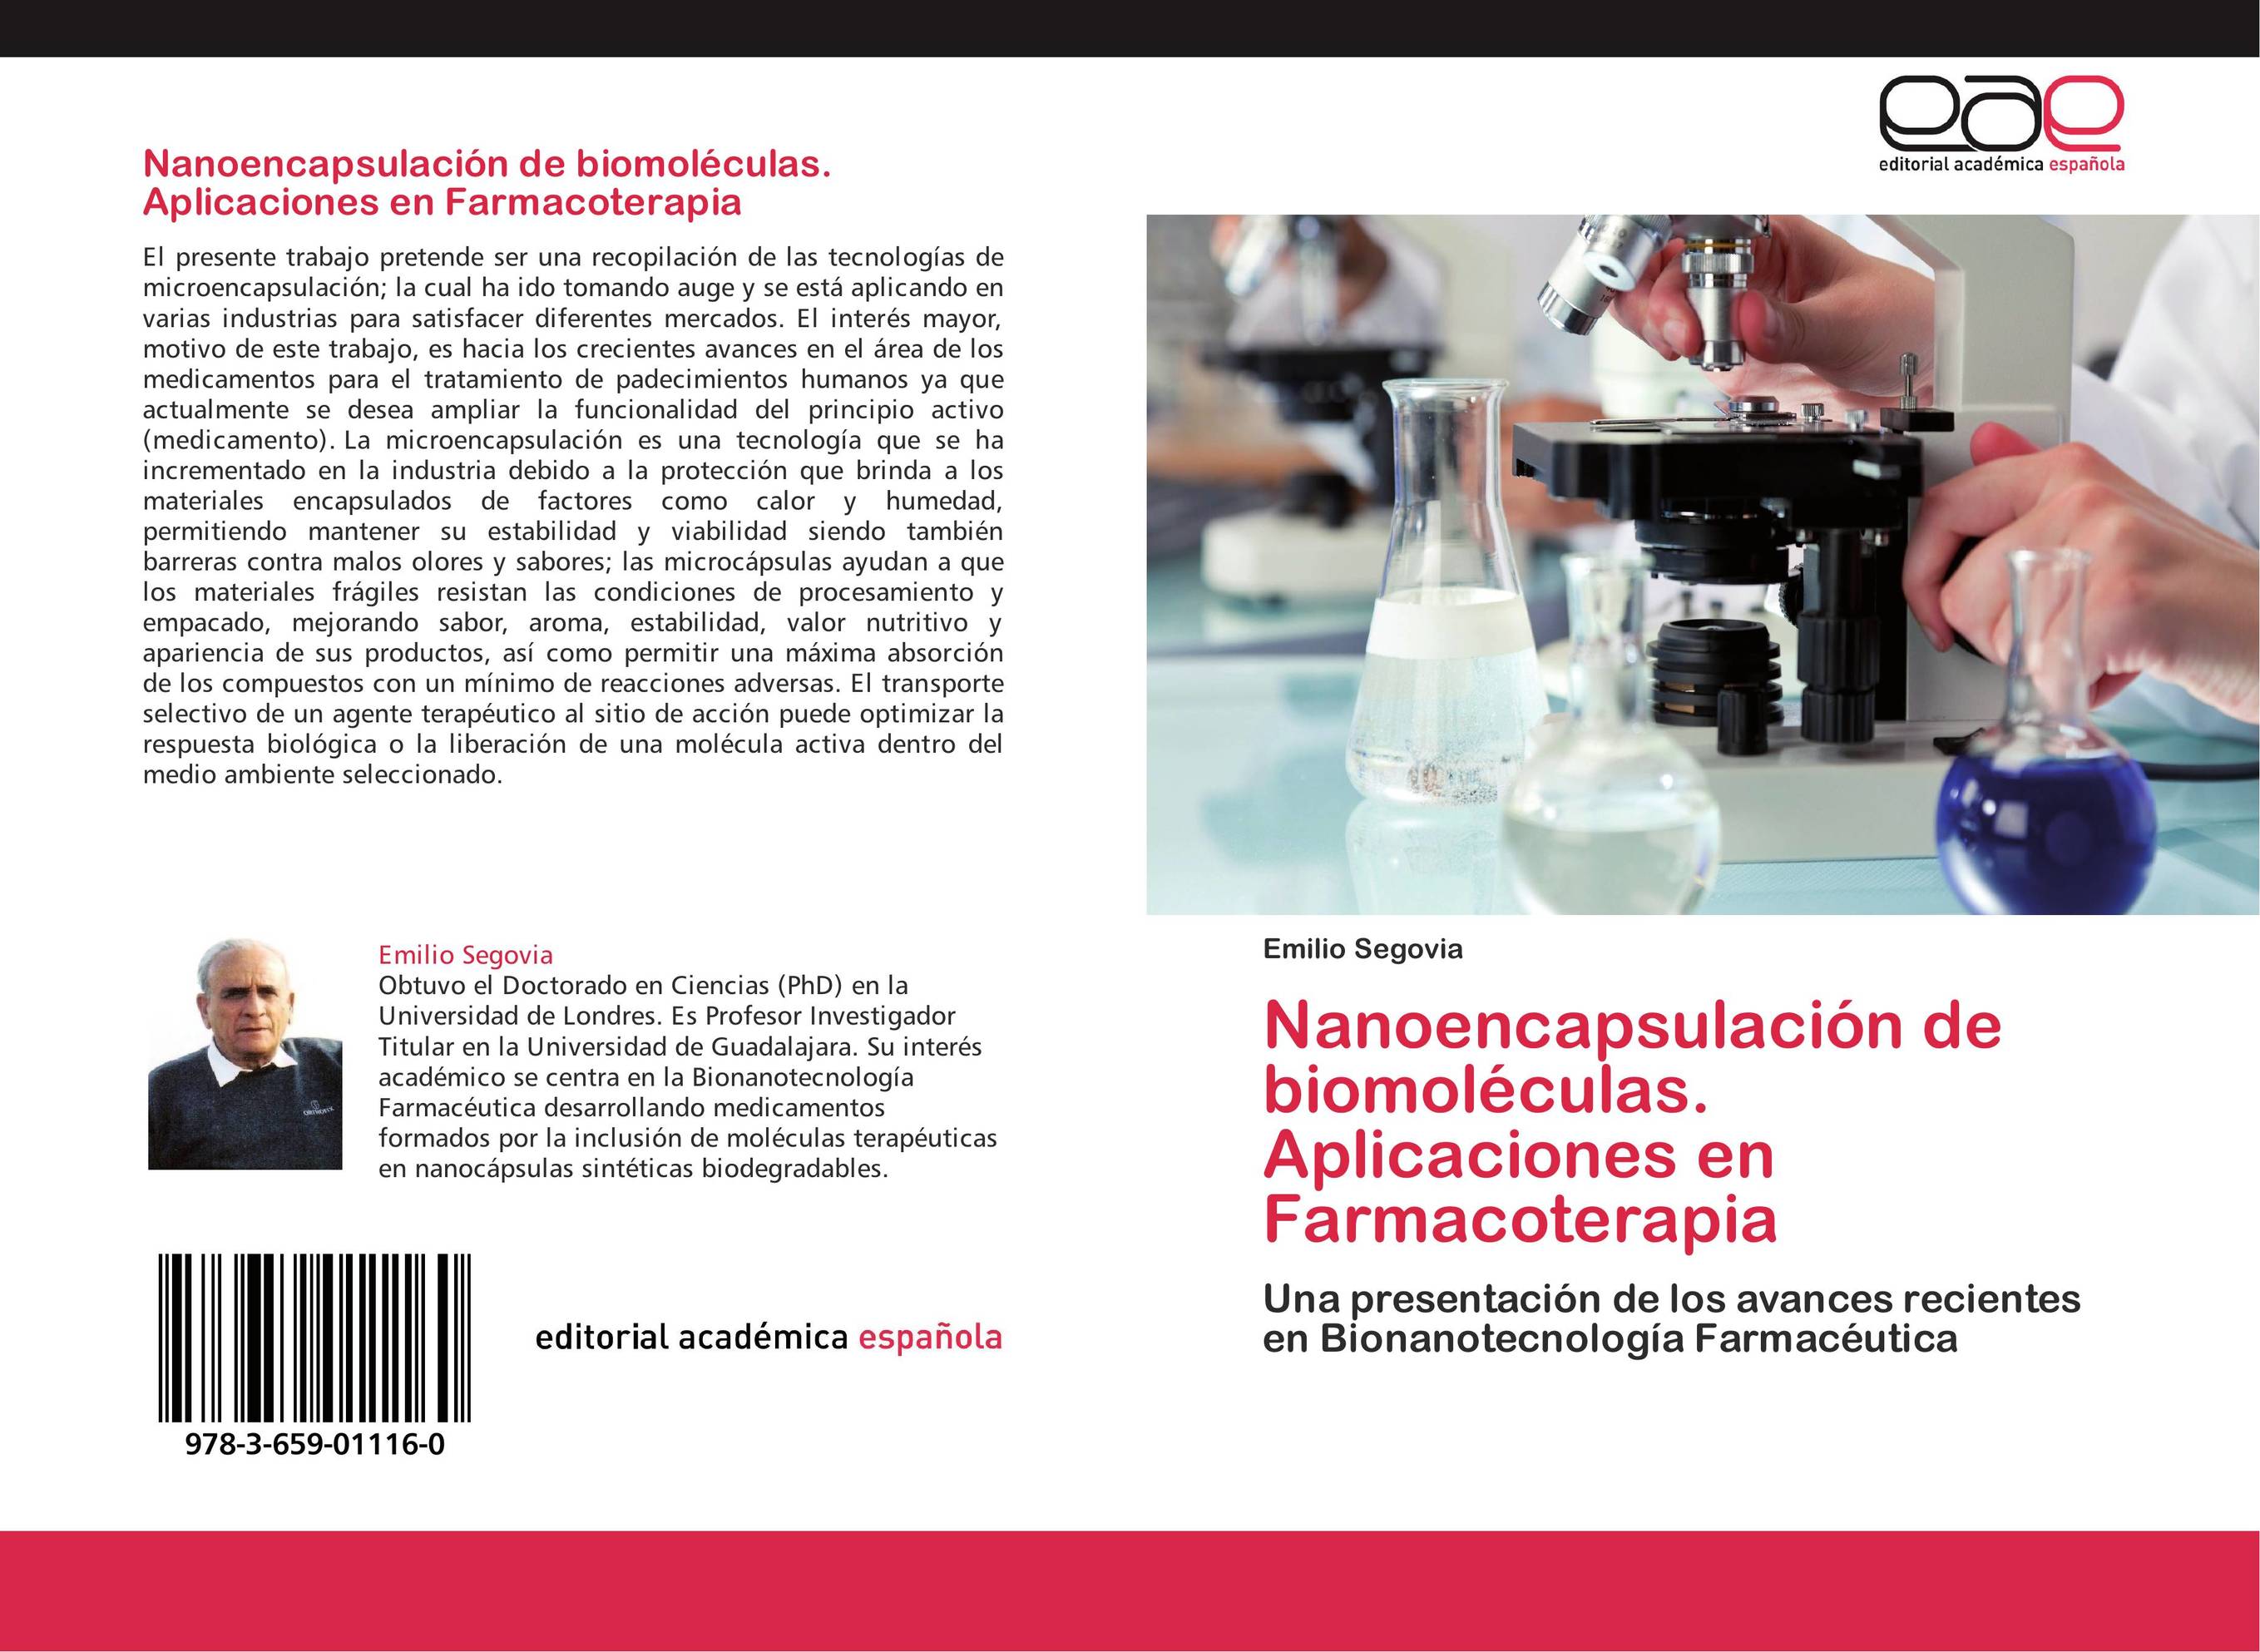 Nanoencapsulación de biomoléculas. Aplicaciones en Farmacoterapia